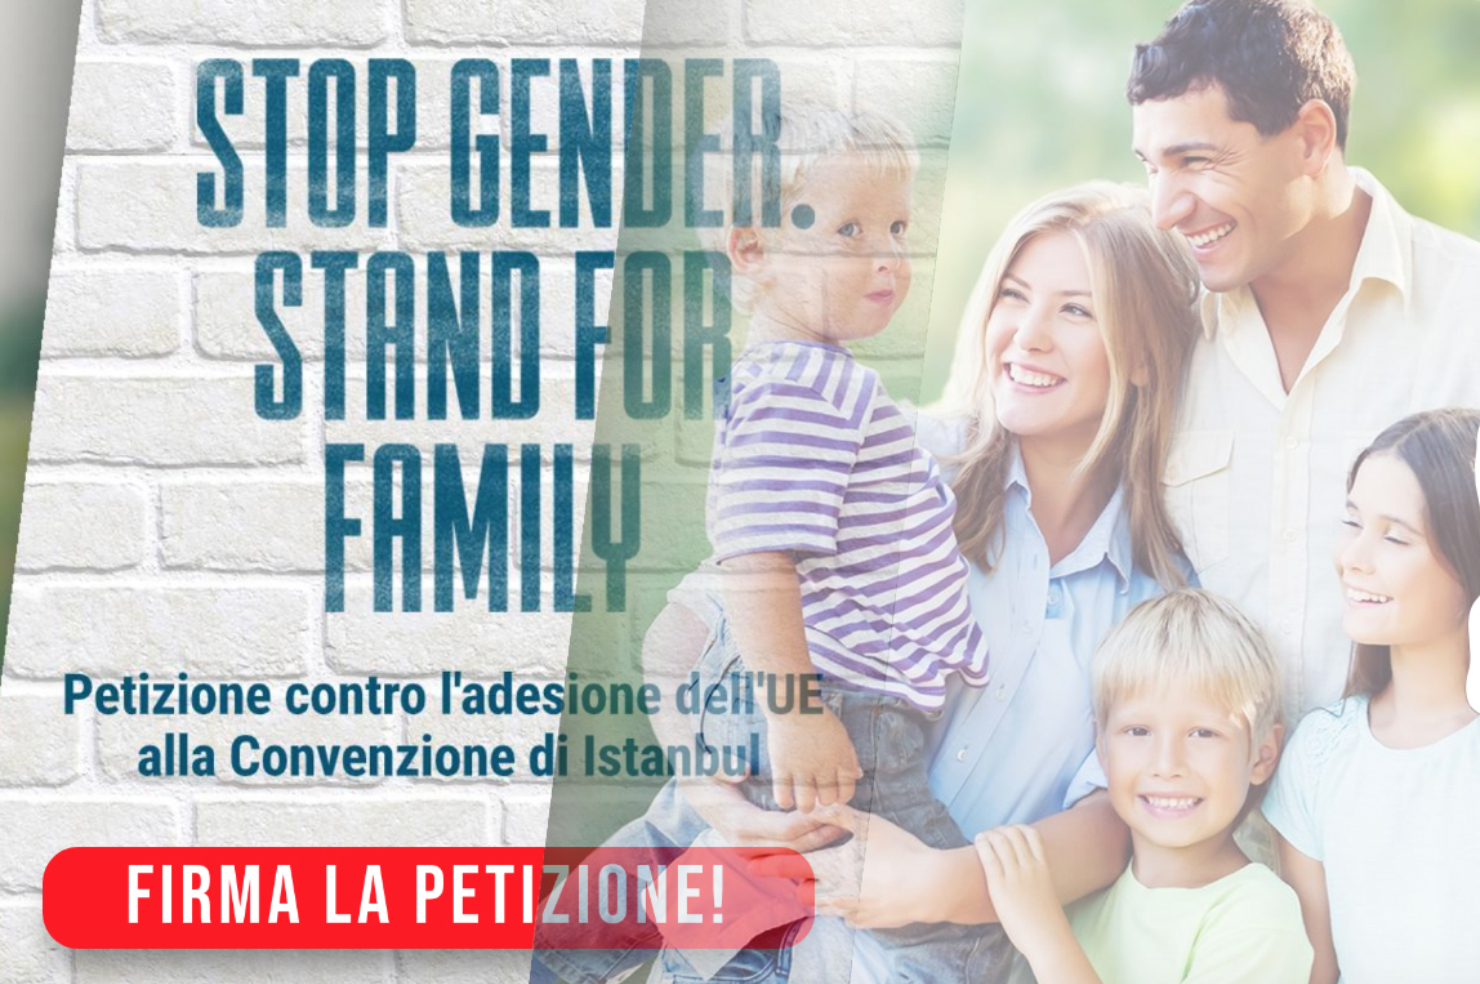 La petizione internazionale contro il gender sottoscritta anche da Pro Vita & Famiglia 1